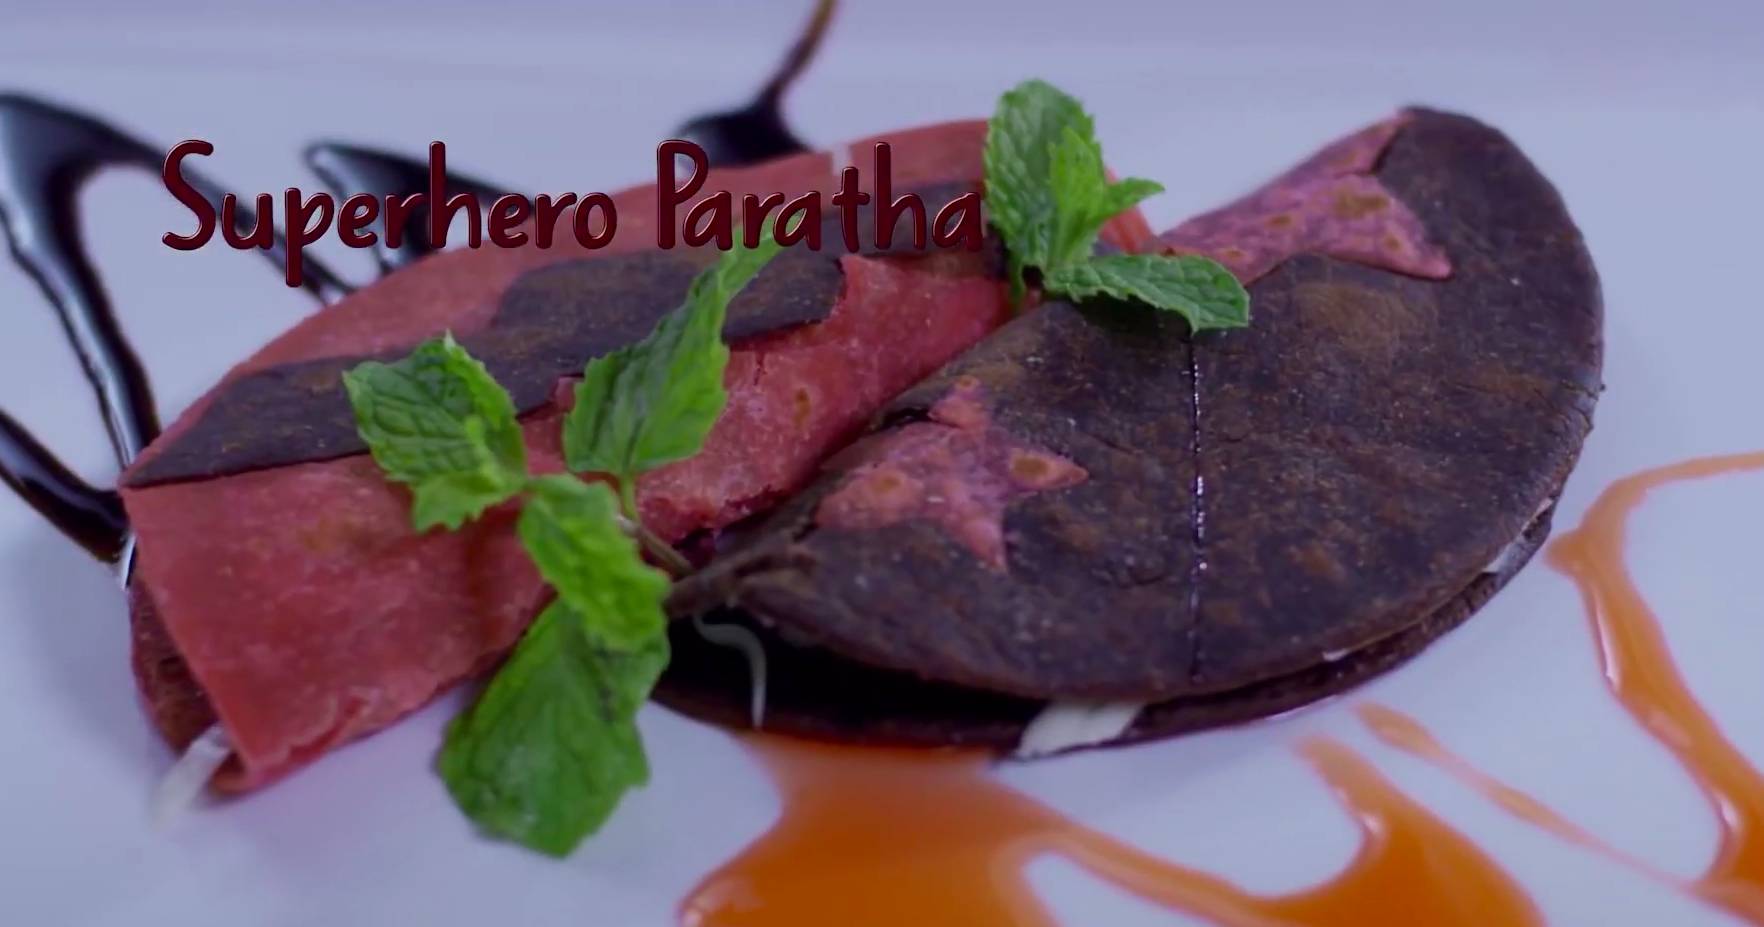 Hershey's Superhero Paratha